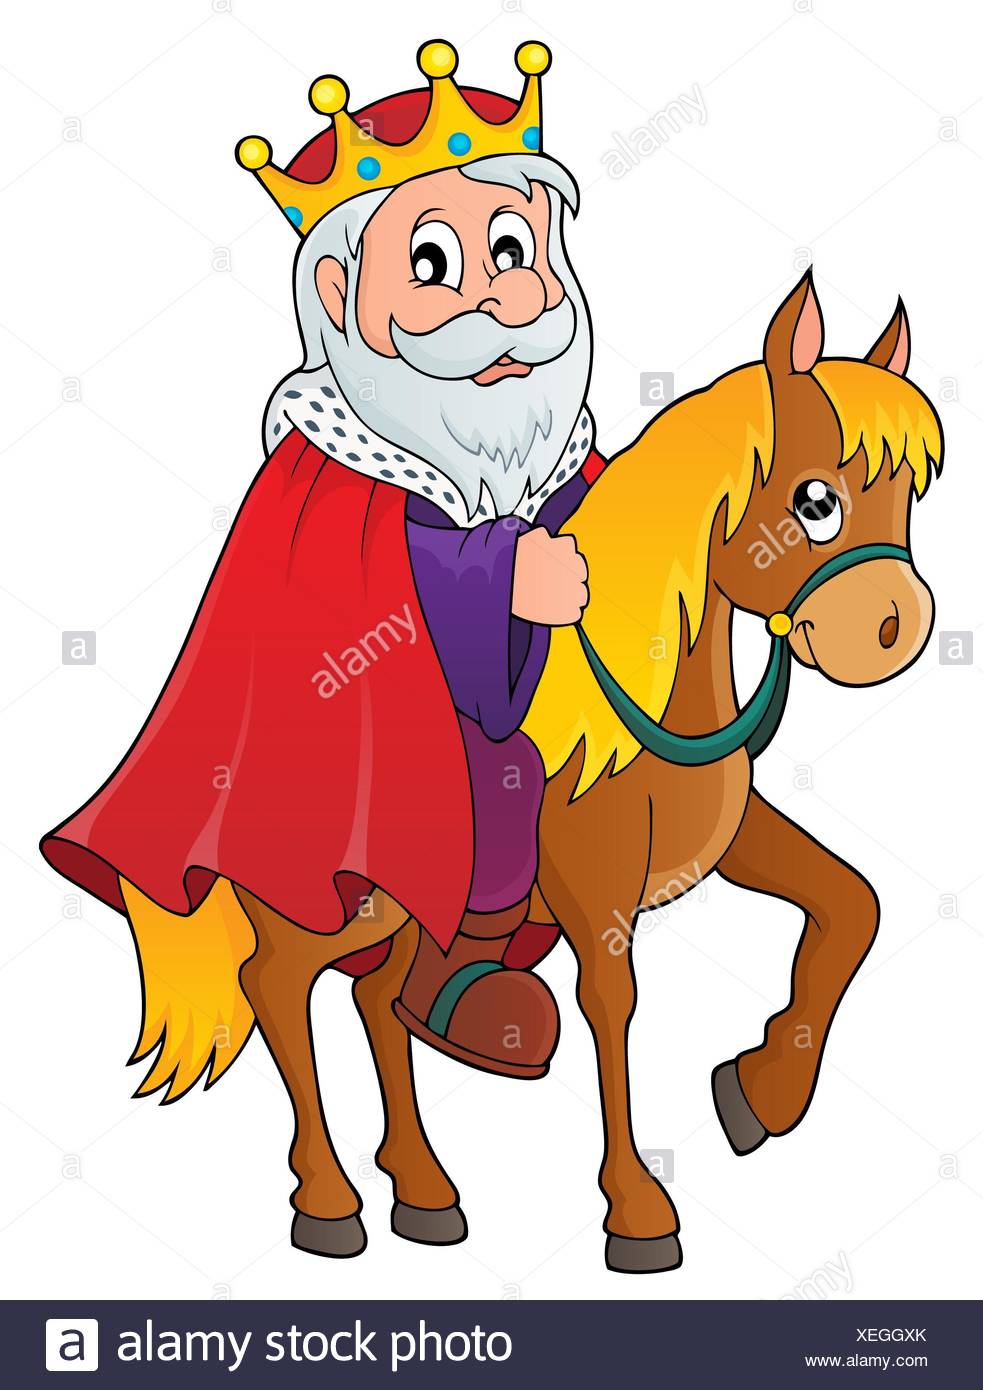 Image         result for cartoon sketch of king william of orange on         horseback